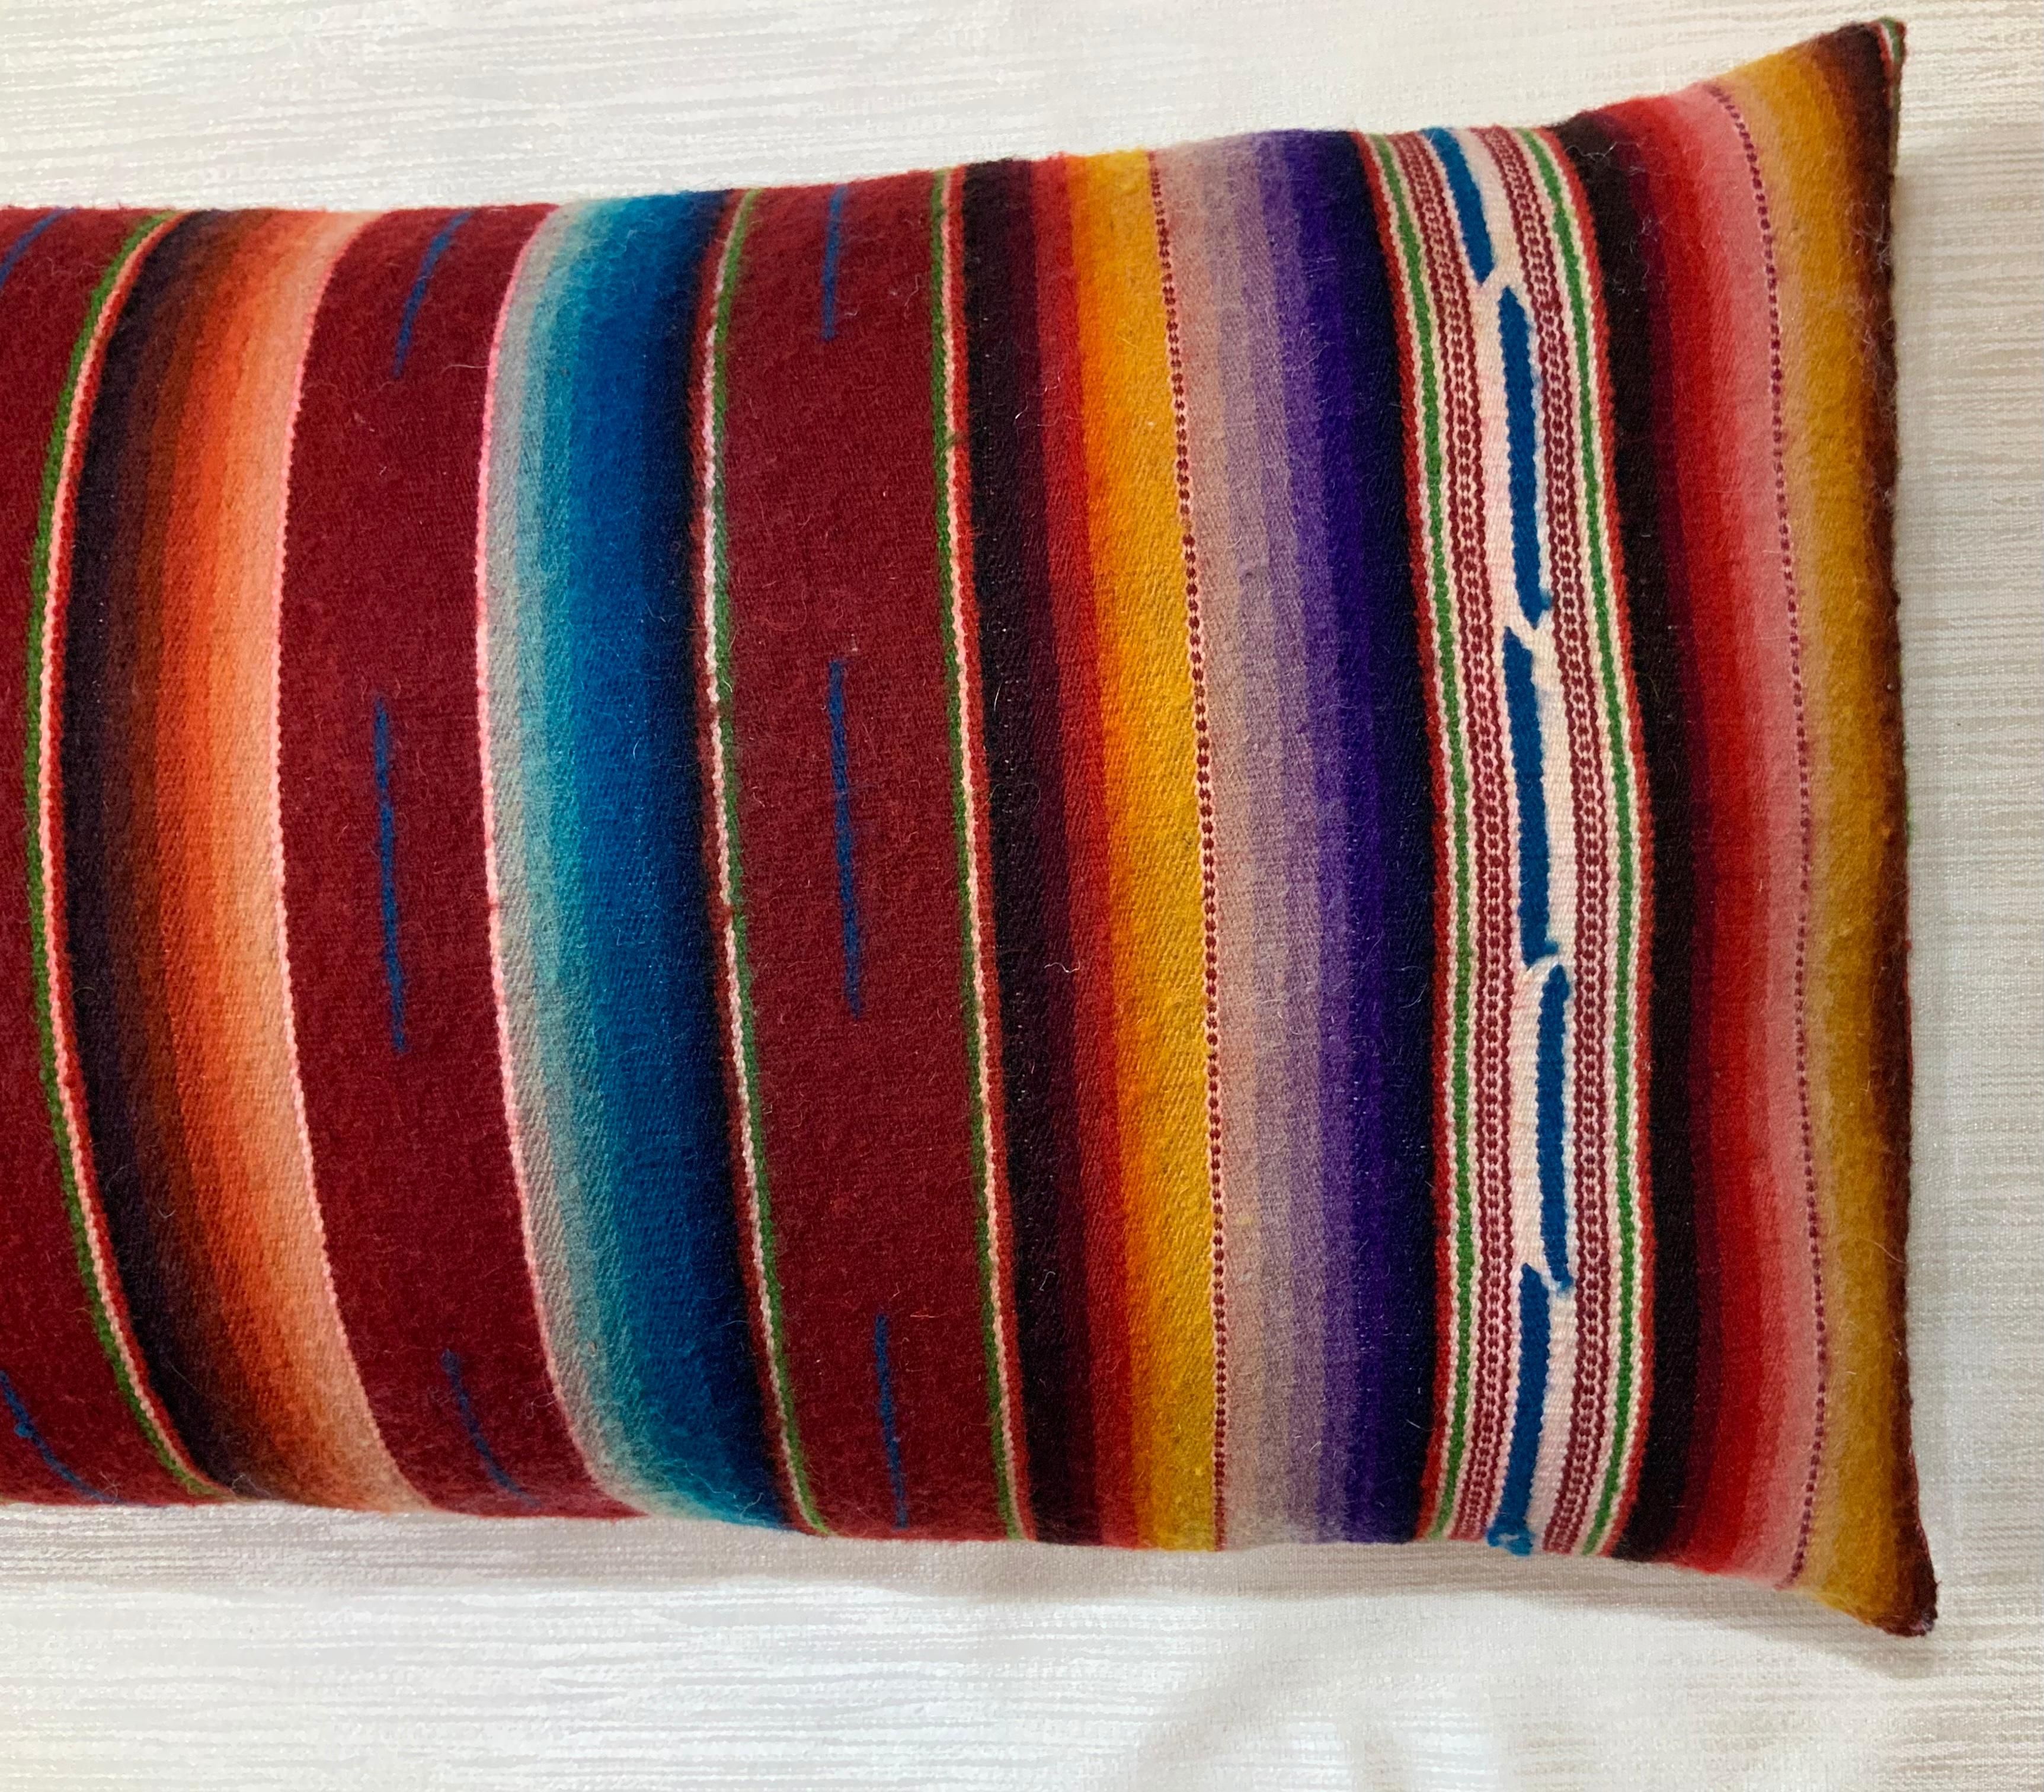 Schönes Paar Kissen aus feiner handgewebter mehrfarbiger mexikanischer Saltillo-Decke.
Ursprünglich wurde dieser Preis als Wandteppich verwendet und wir haben uns entschlossen, daraus Kissen zu machen. Die Kissen sind mit der gewebten